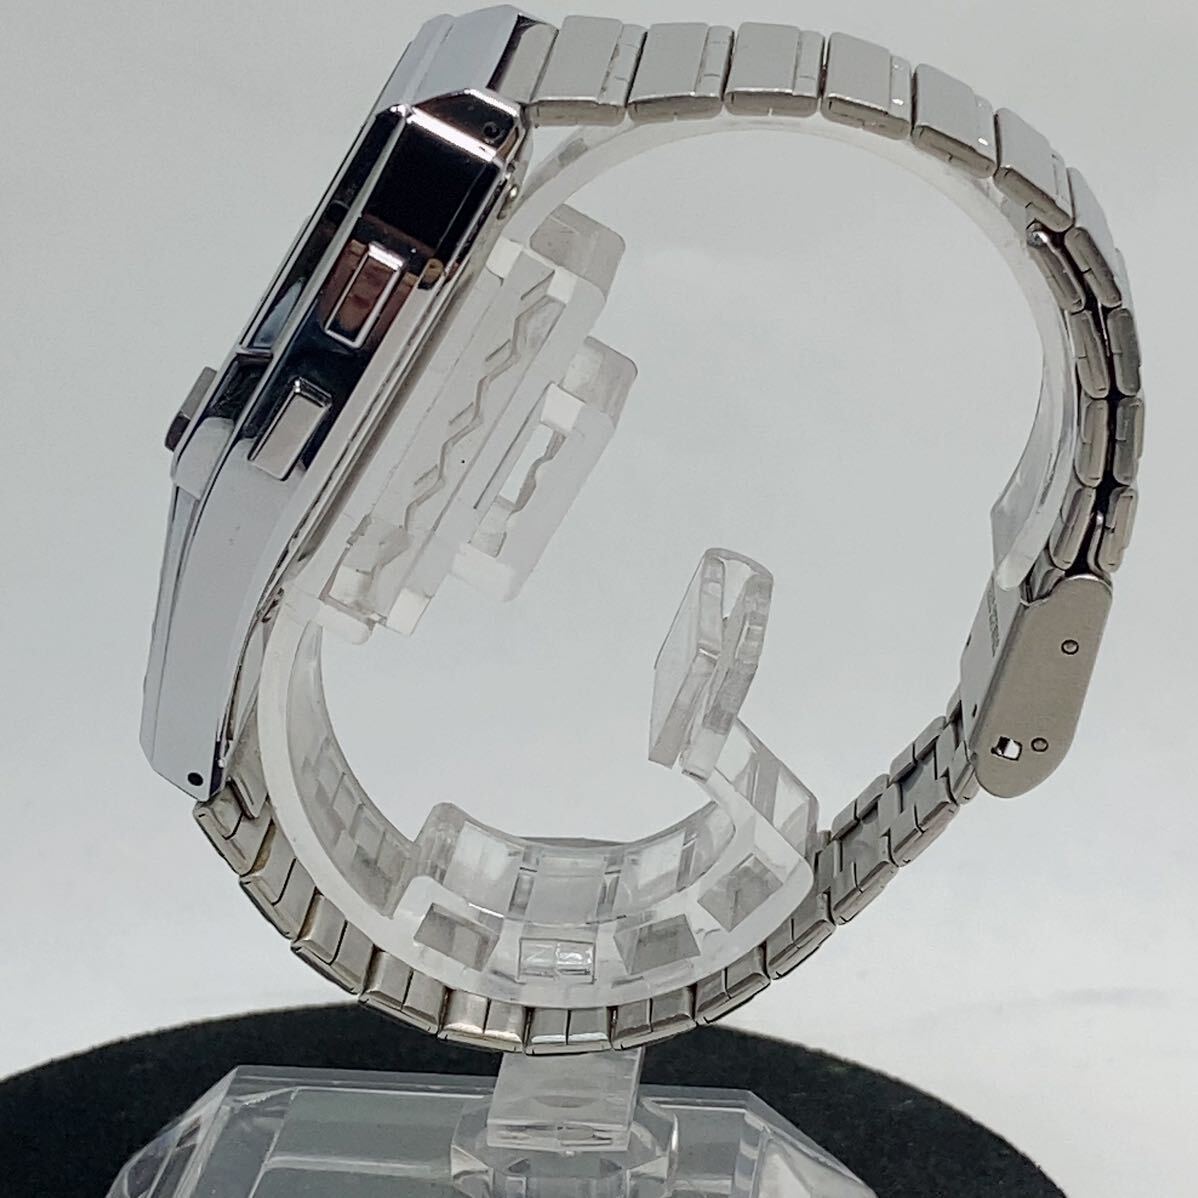 CASIO DATA BANK 150 Casio Data Bank DBC-1500 цифровой наручные часы работа товар оригинальный браслет кварц 